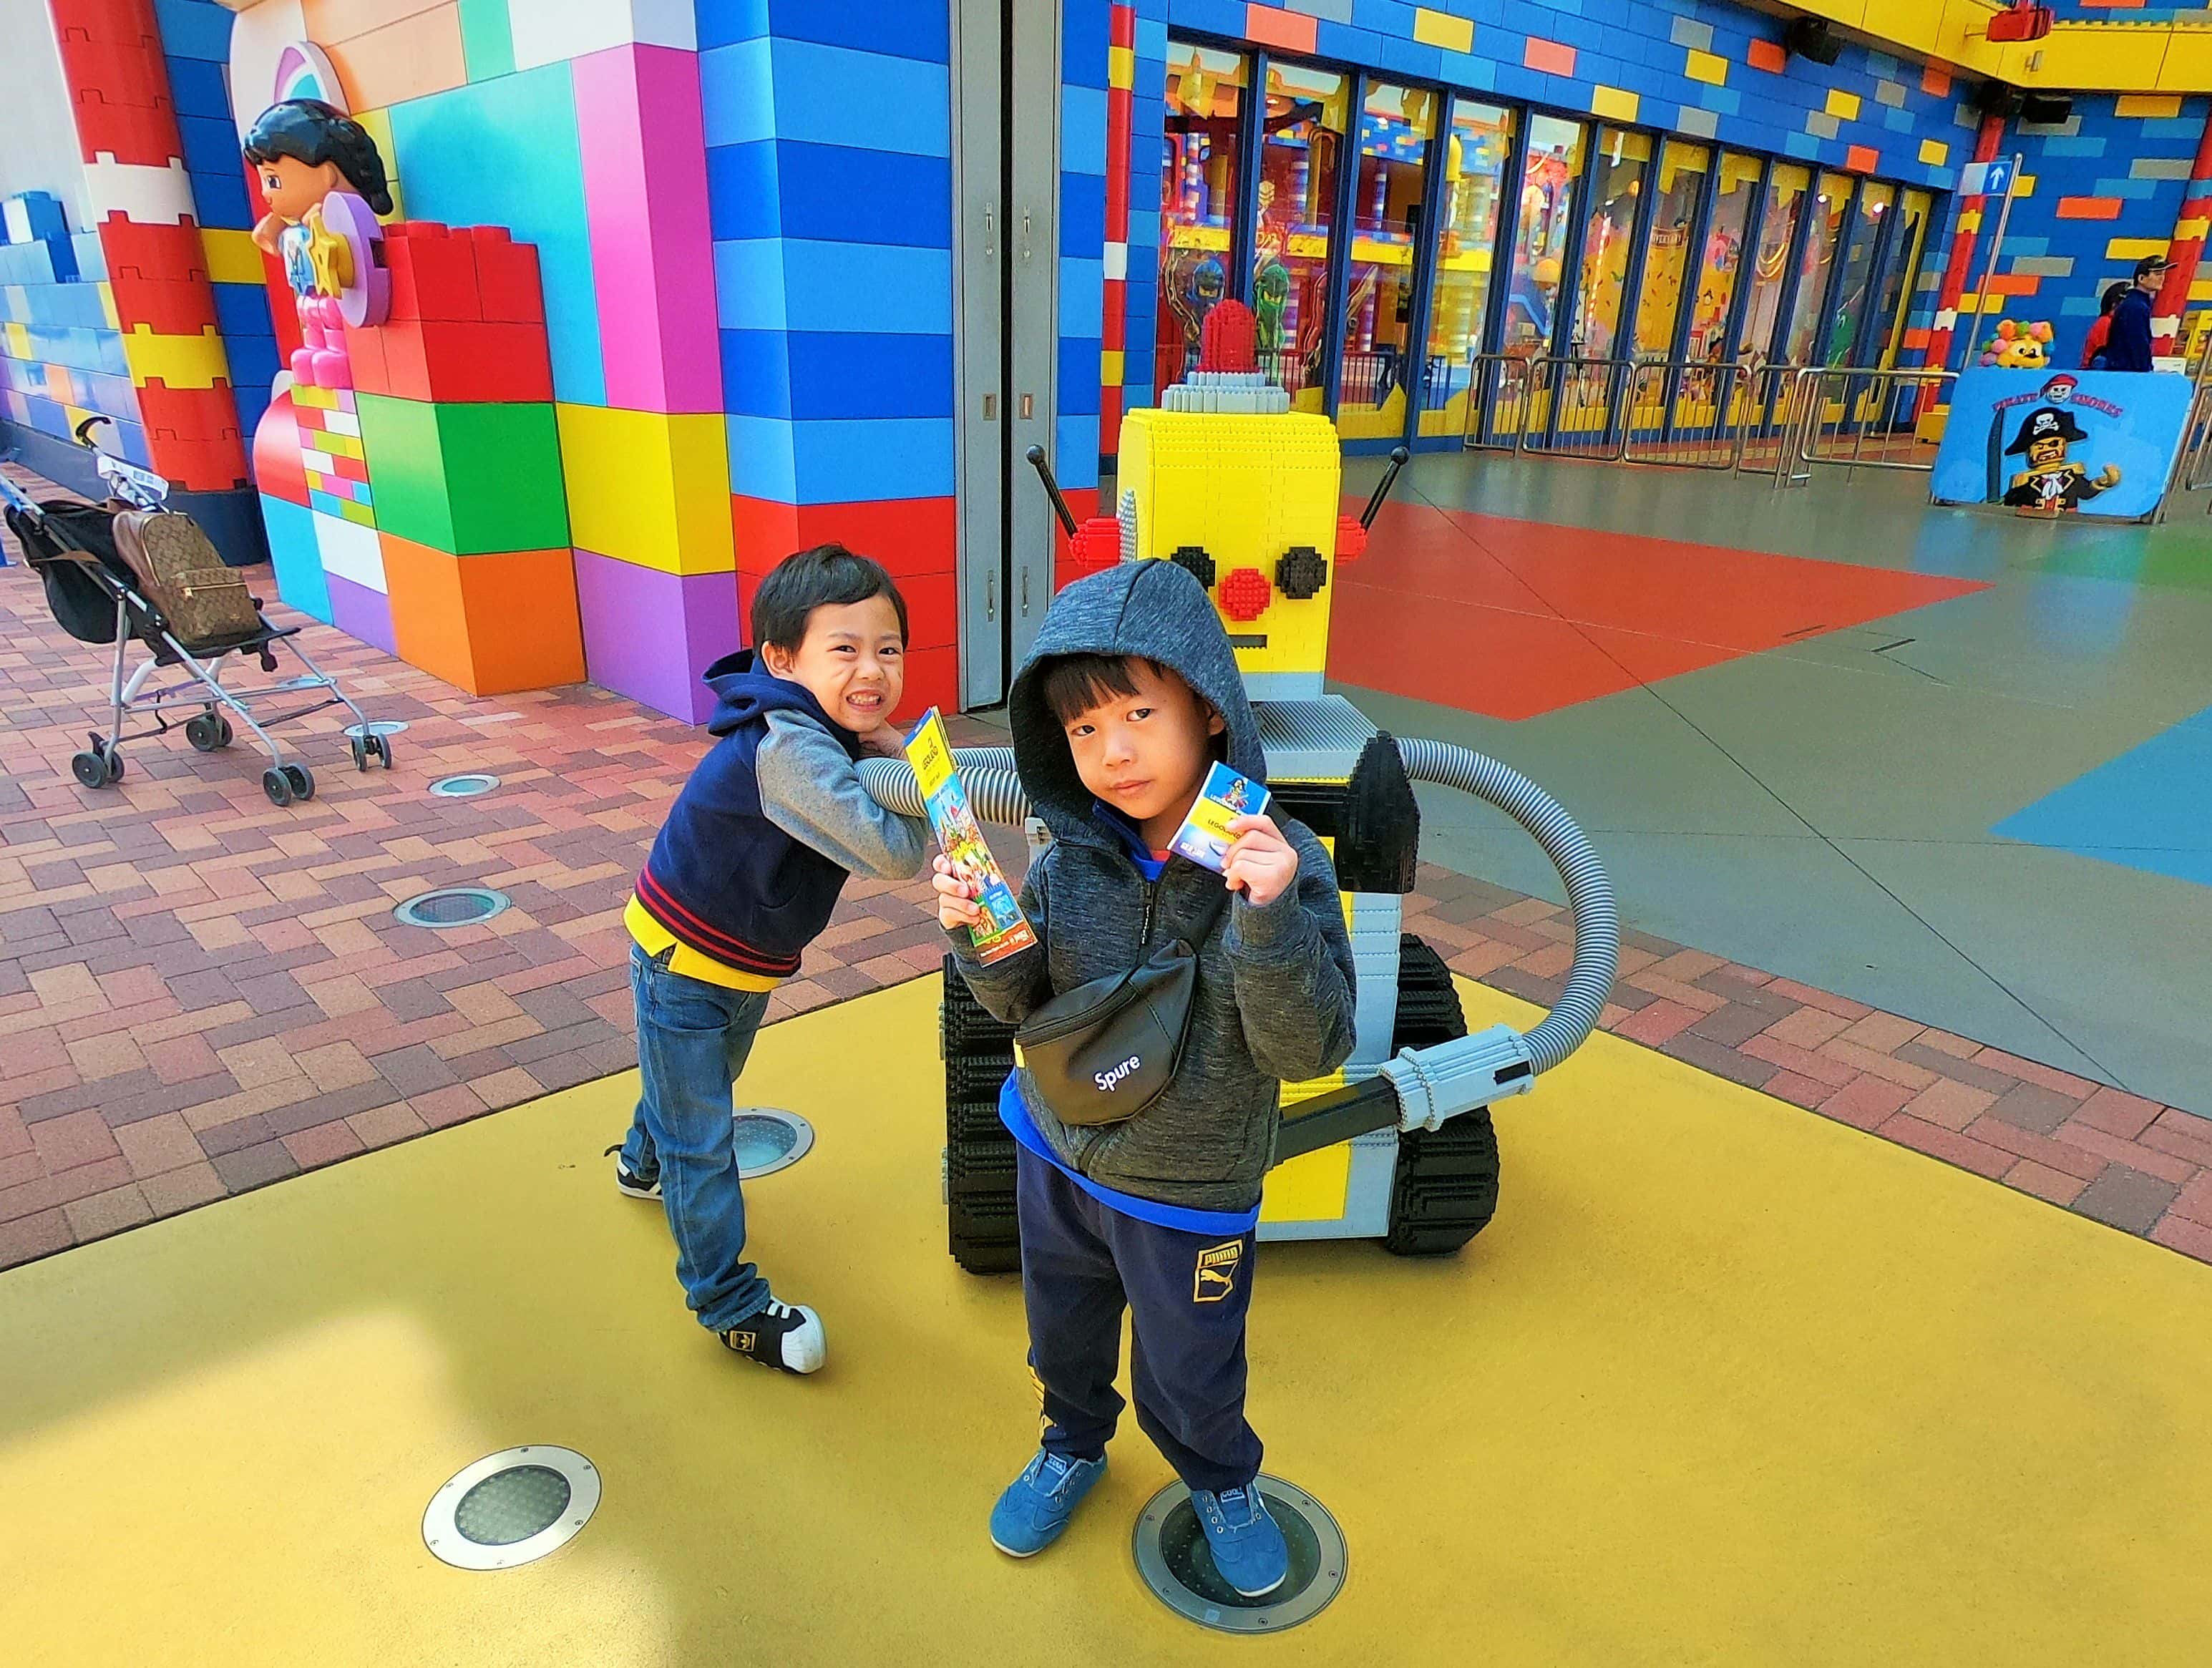 พาลูกเที่ยวญี่ปุ่น ดได้ไม่อั้น สวนสนุก ธีมพาร์คแห่งใหม่ที่นาโกย่า (Nagoya) คือ เลโก้แลนด์ Legoland @Japan Resort  